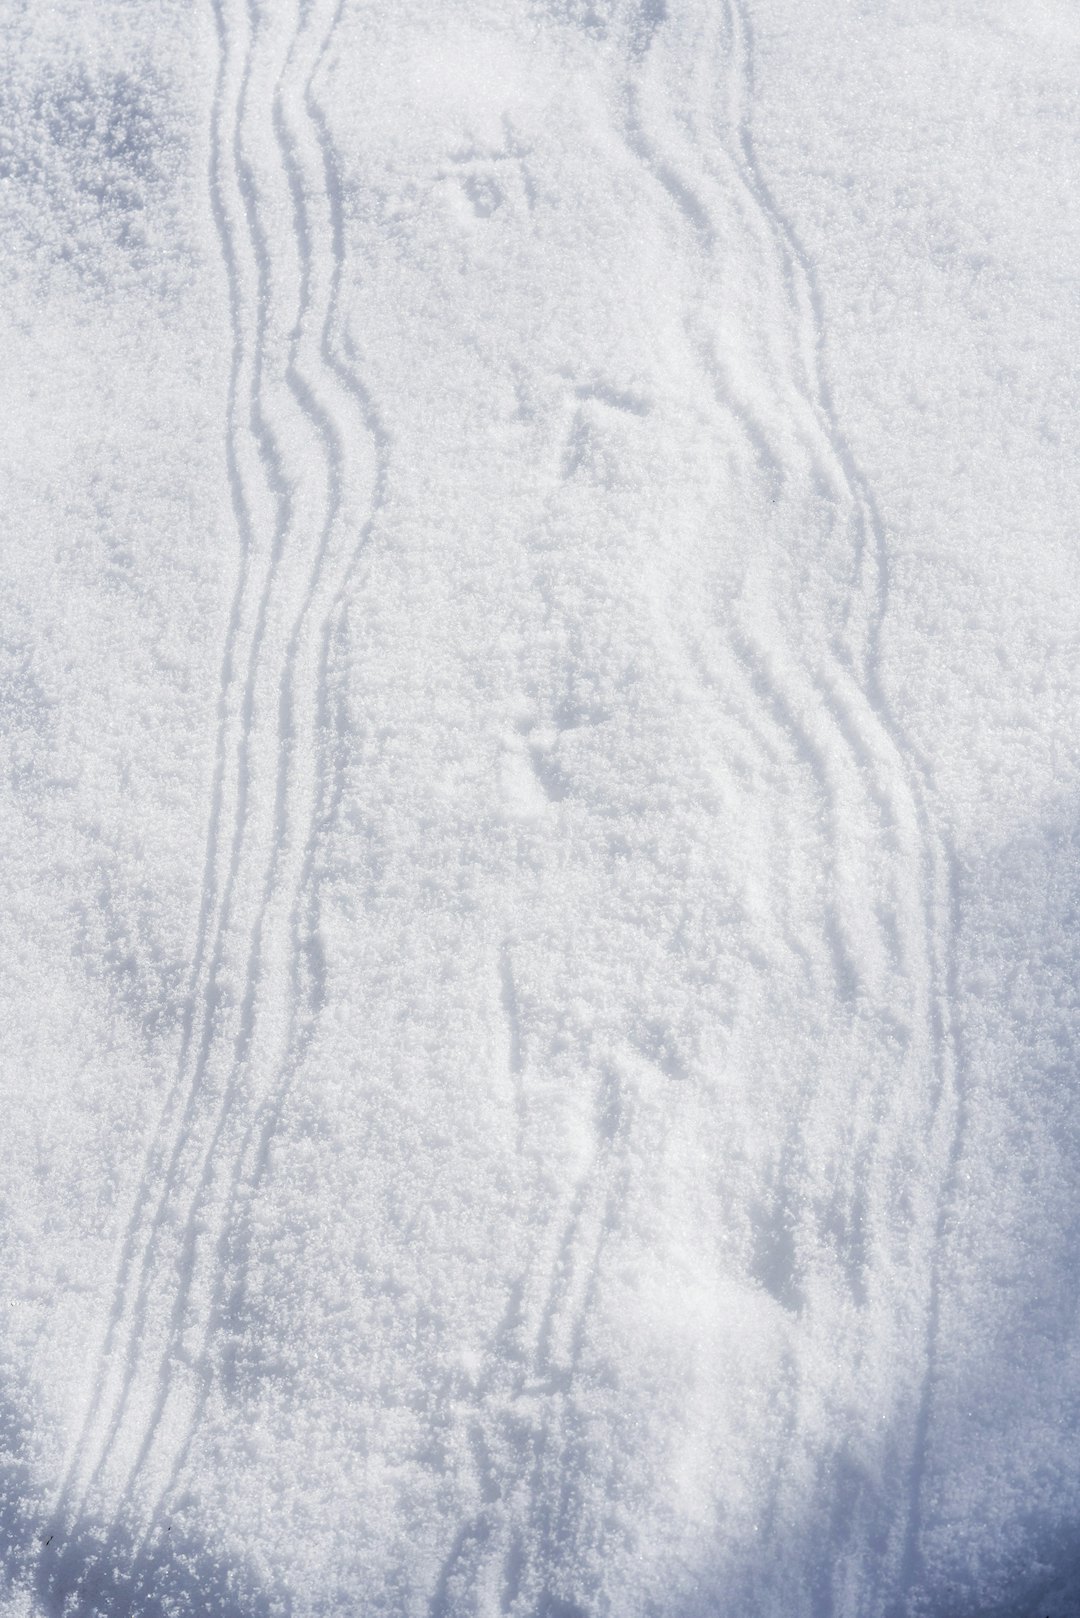 slepespor etter tiurvinger i snøen ved skogsfuglleik